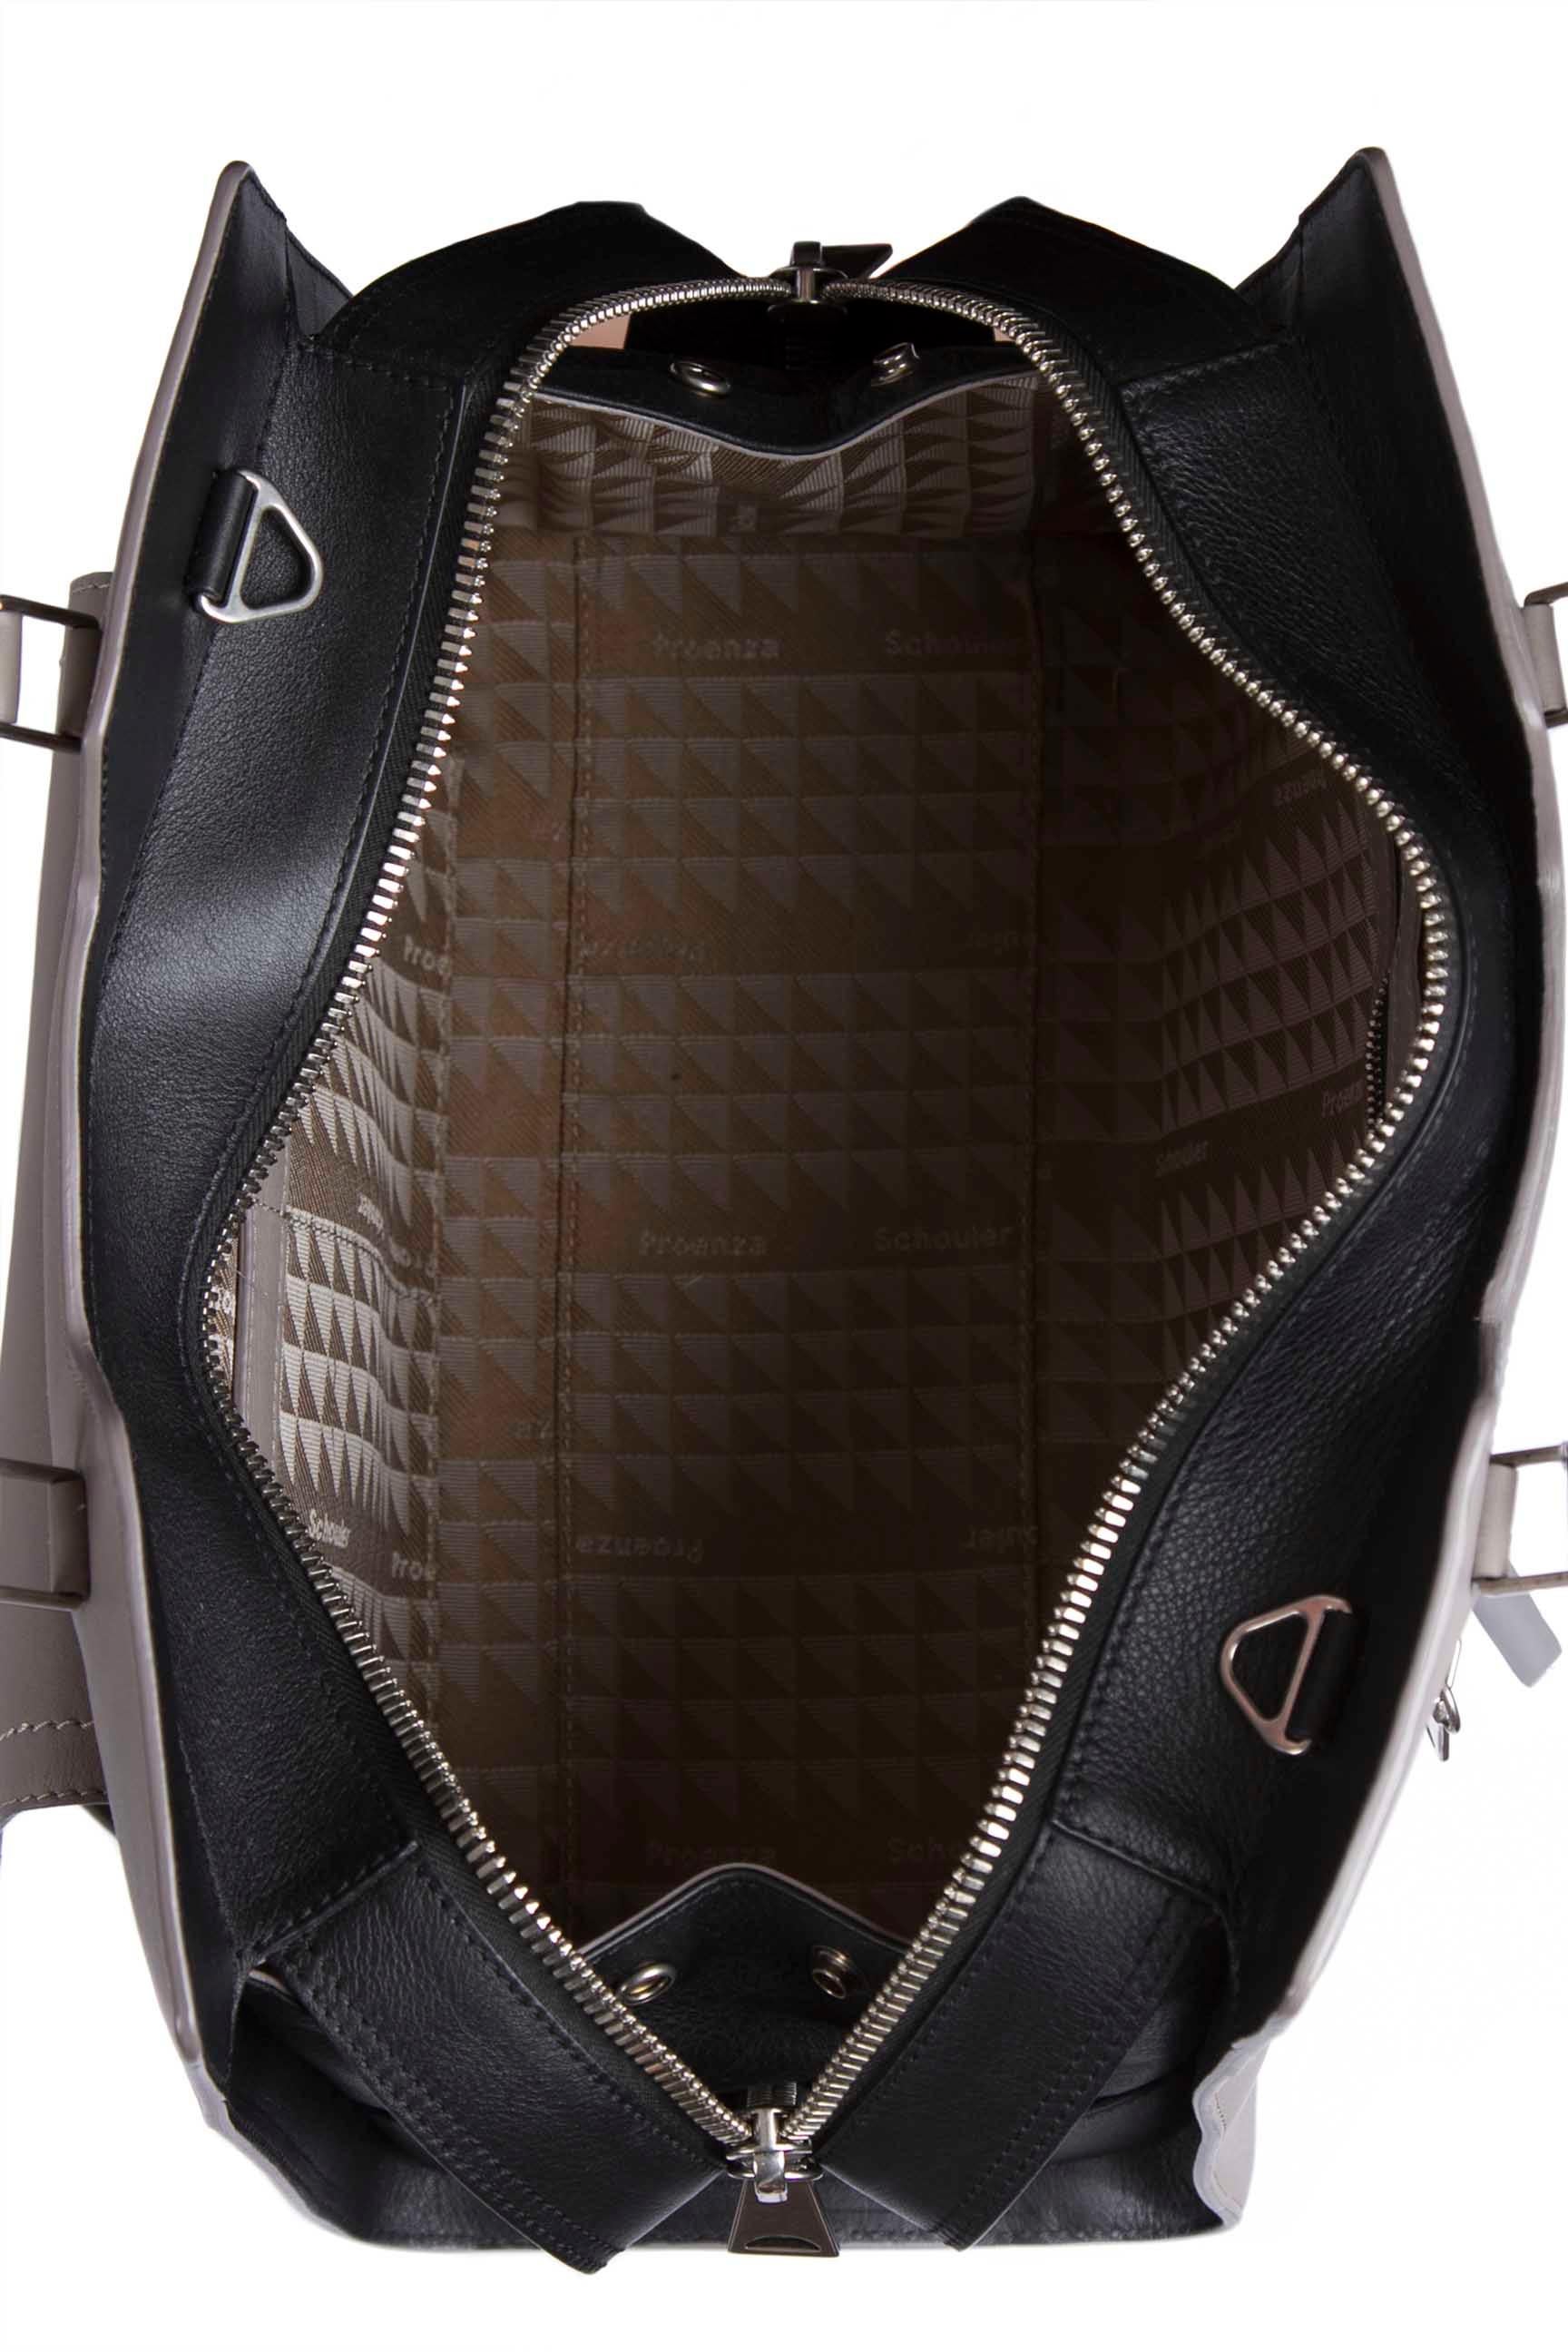 grey leather satchel